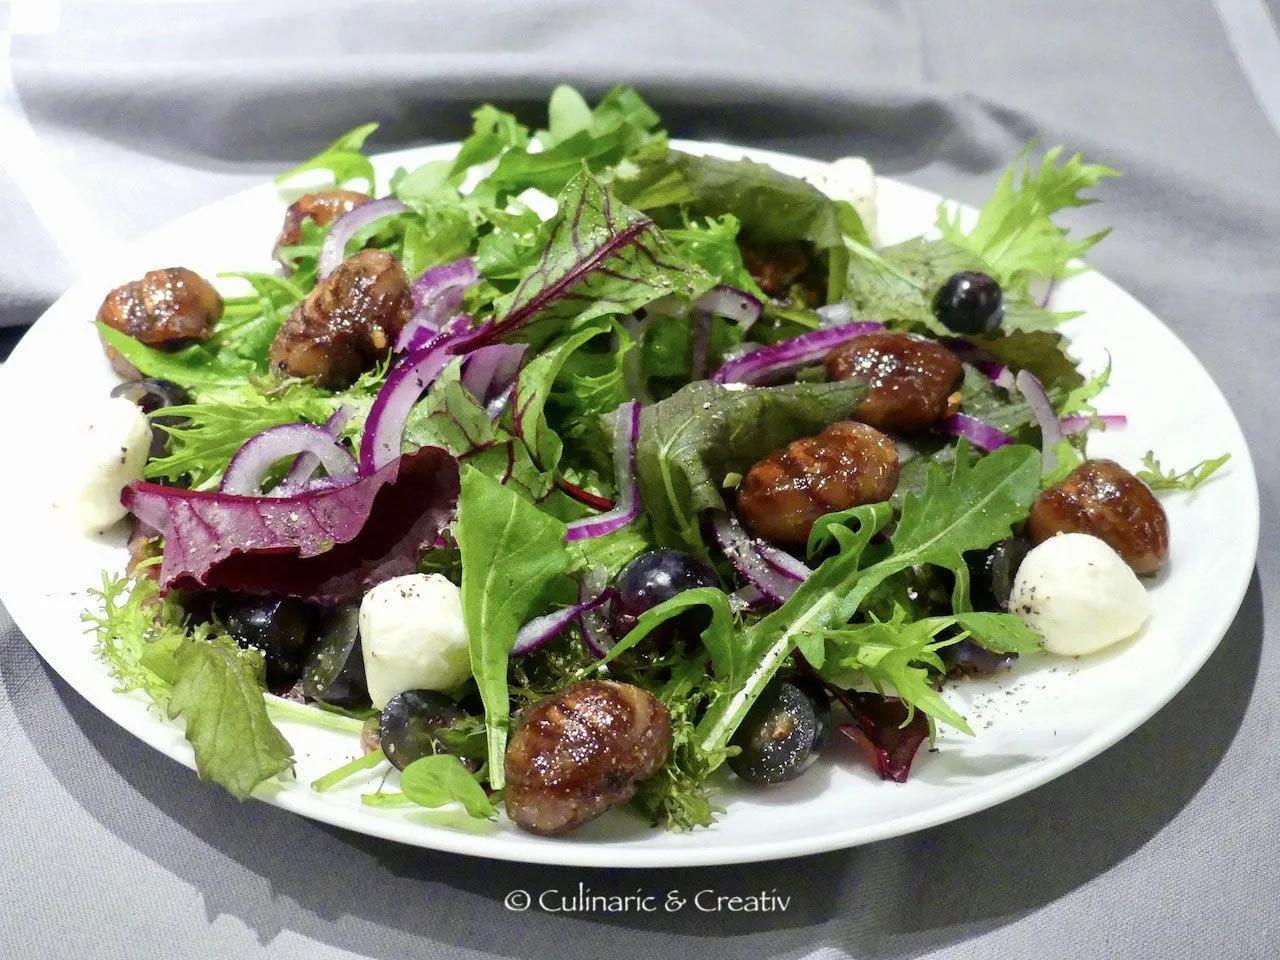 Wildkräuter-Salat mit karamellisierten Maronen | Wildkräuter salat ...